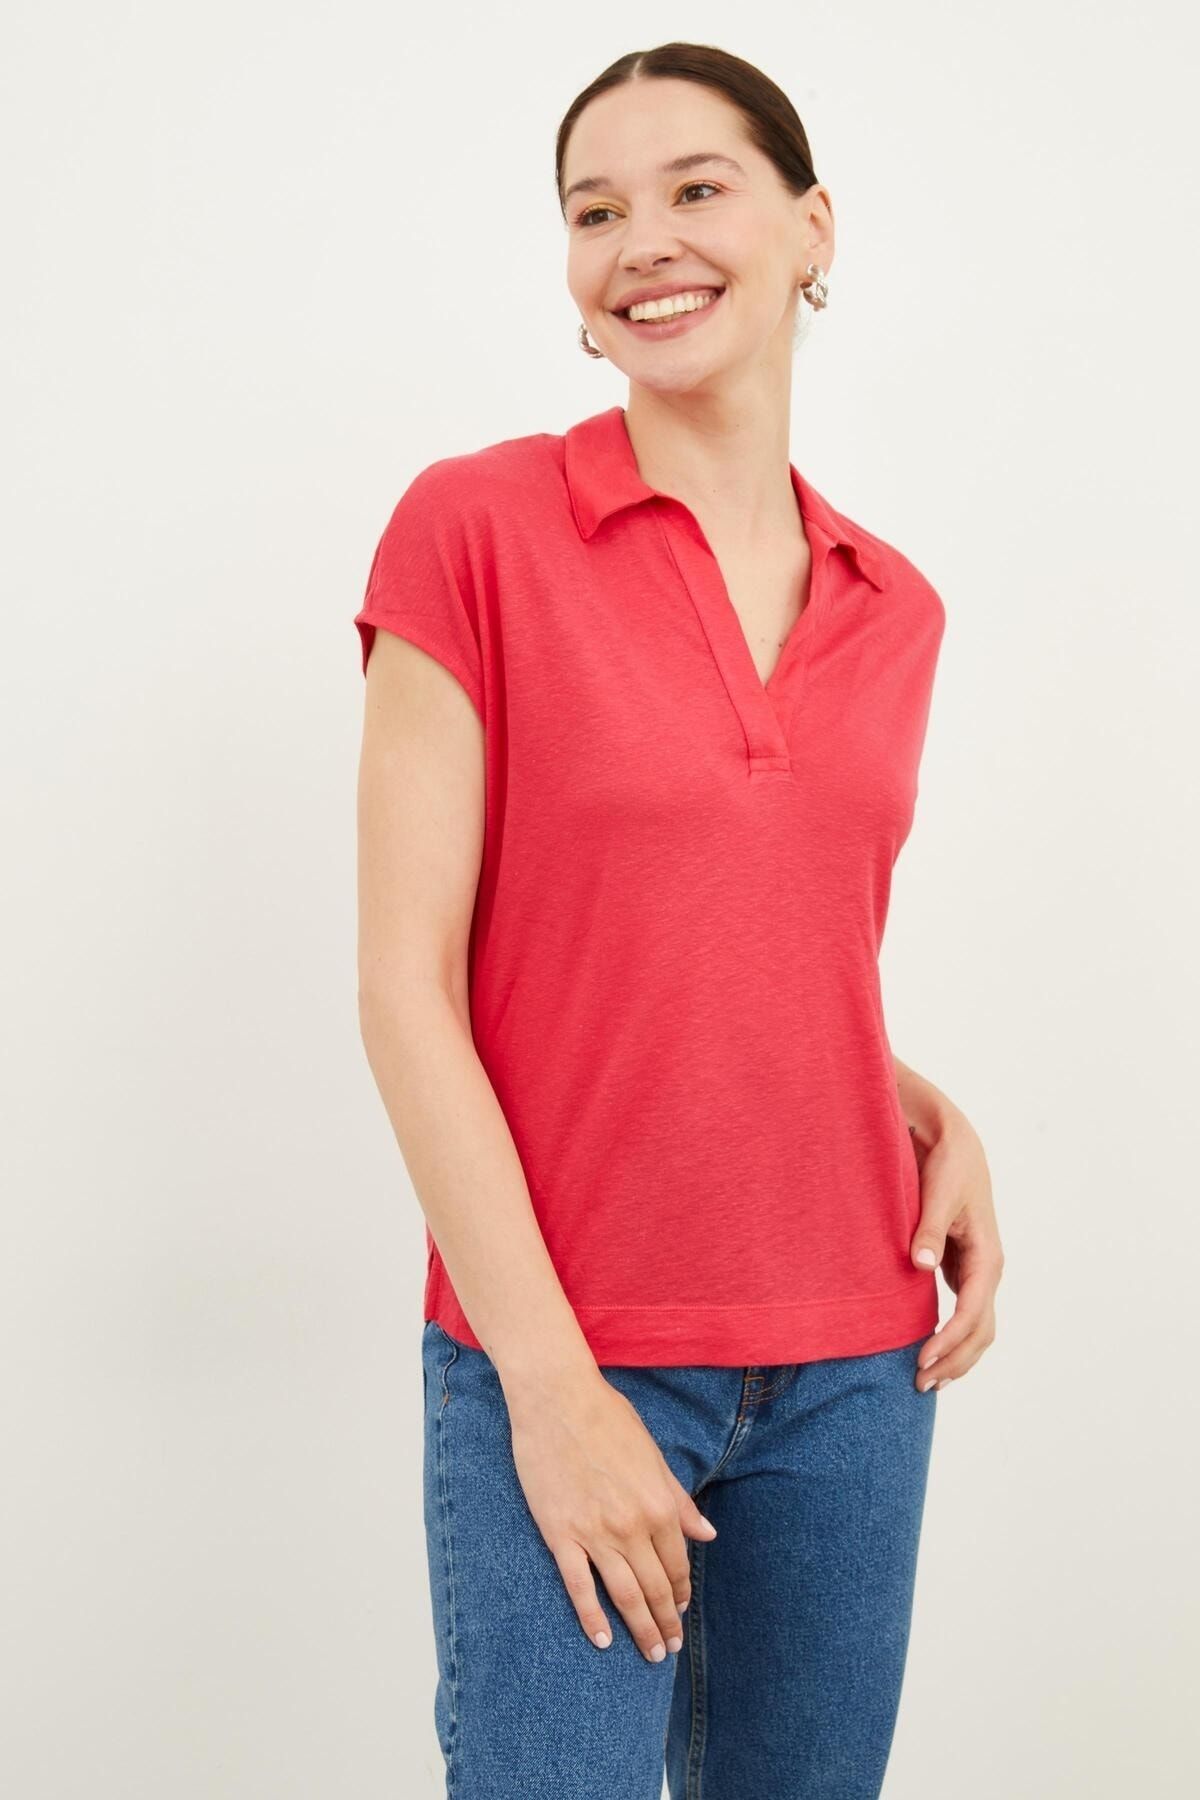 Hanna's Kadın Polo Yaka Japone Kısa Kollu Düz Renk Örme Pamuklu T-shirt